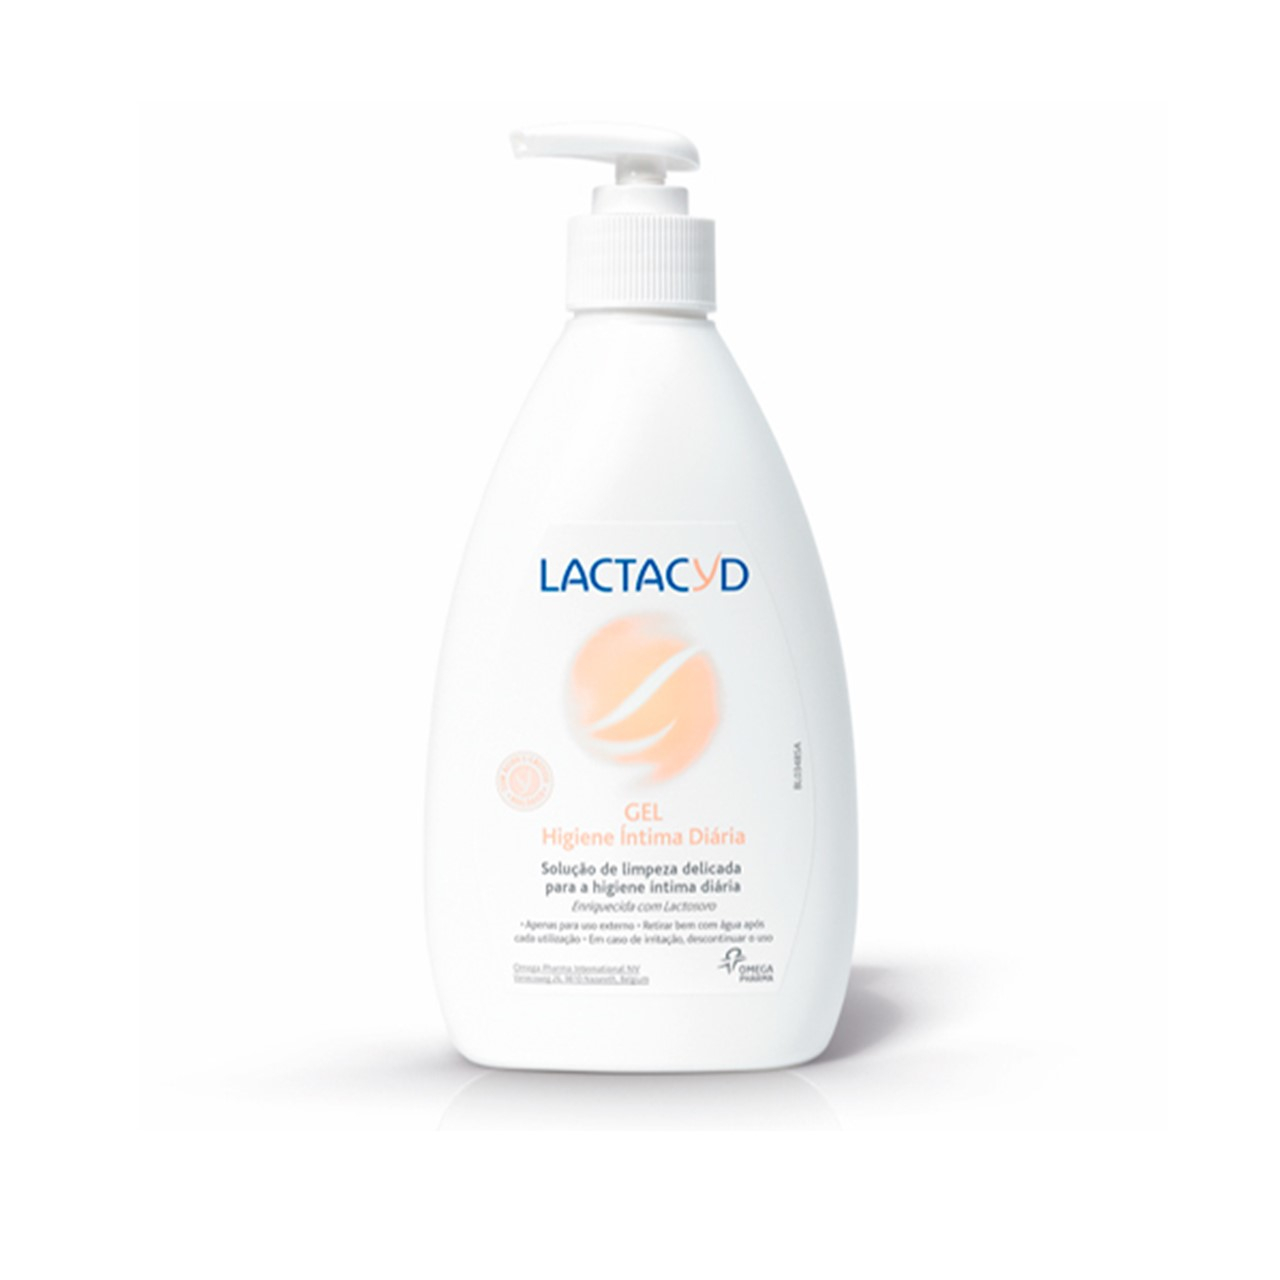 Lactacyd Intimate Hygiene Gel 400ml (13.53fl oz)